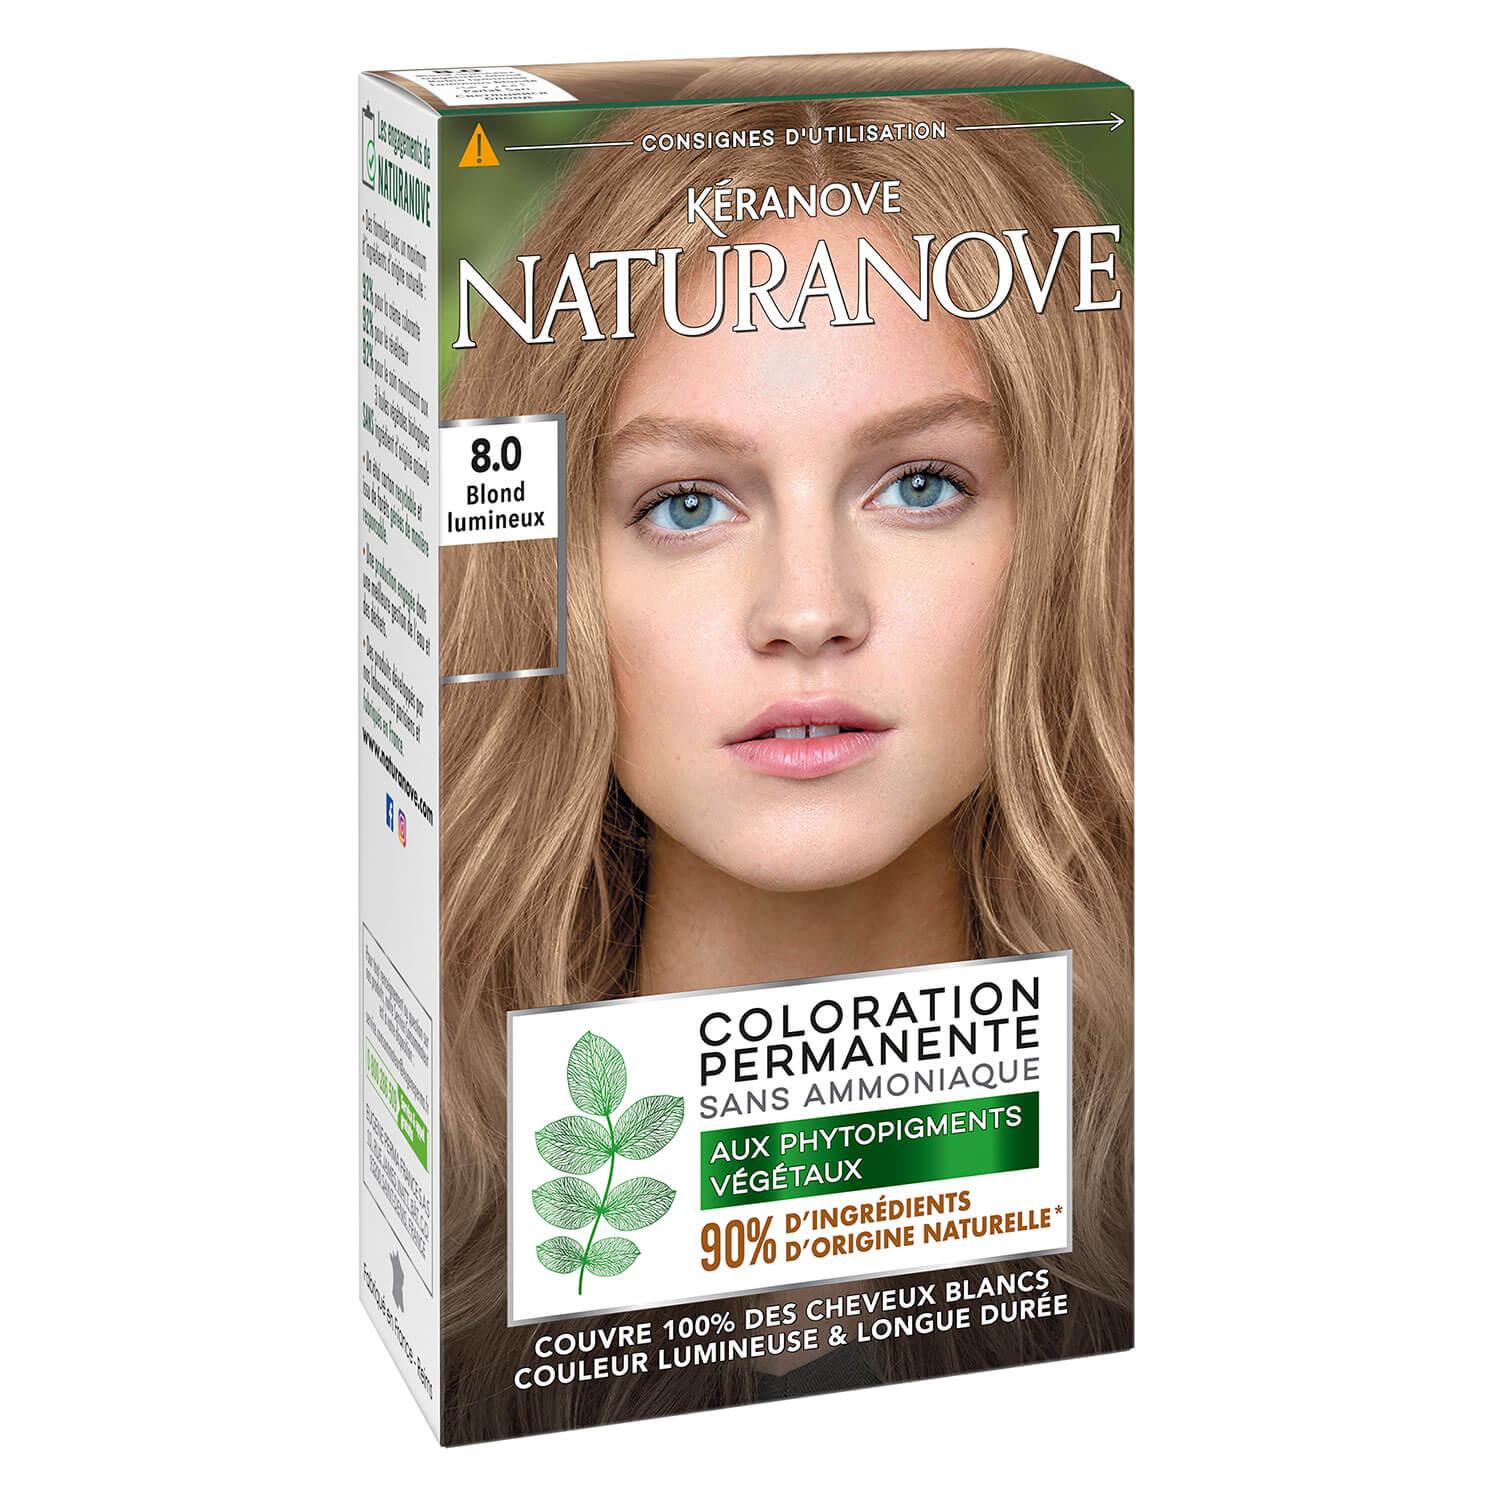 Naturanove - Permanent Hair Color Luminous Blonde 8.0